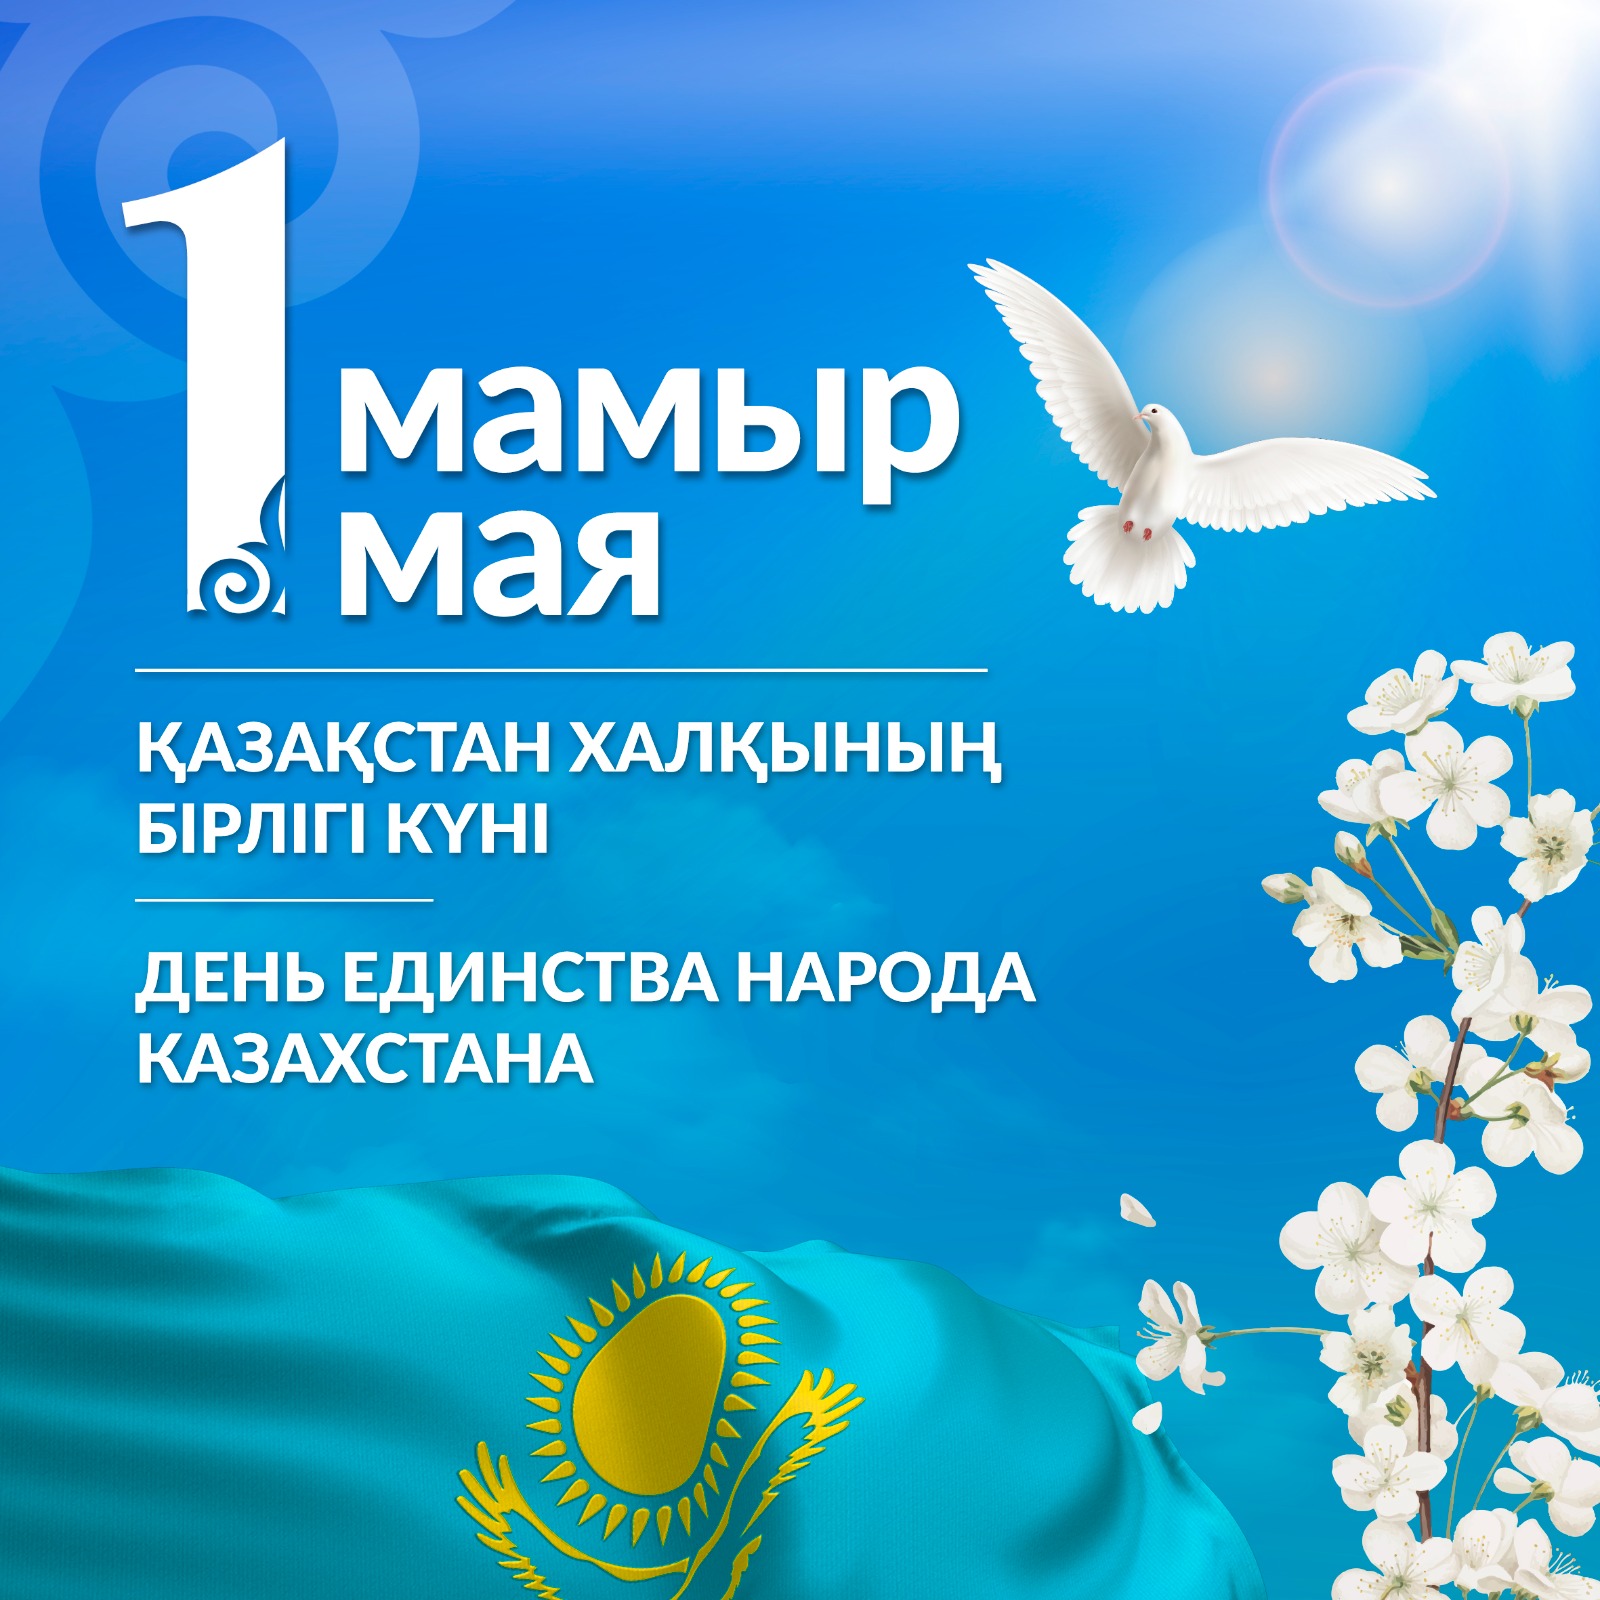 1 мамыр Қазақстан халқының бірлігі күні. 1 мая День единства народа Казахстана